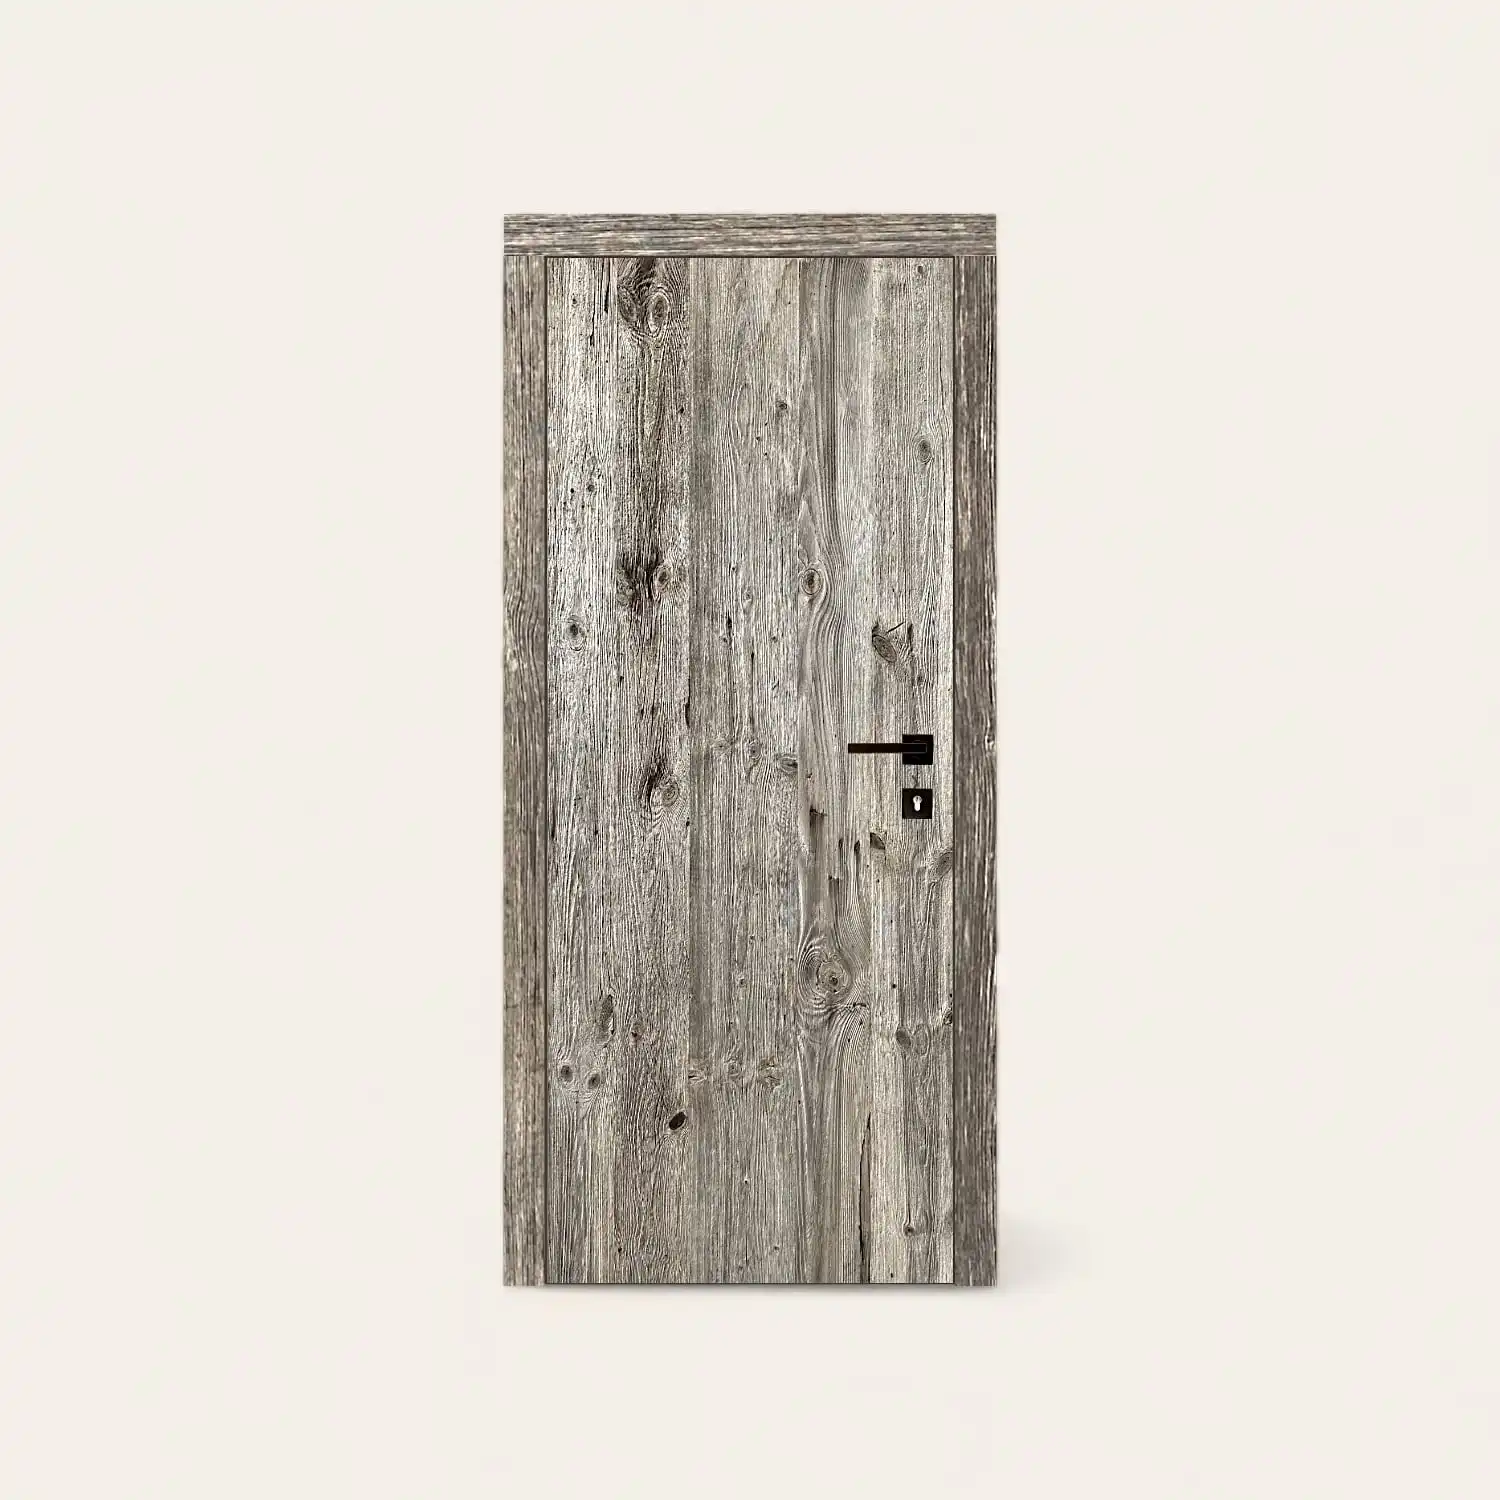  Une porte rustique en bois sur fond blanc. 